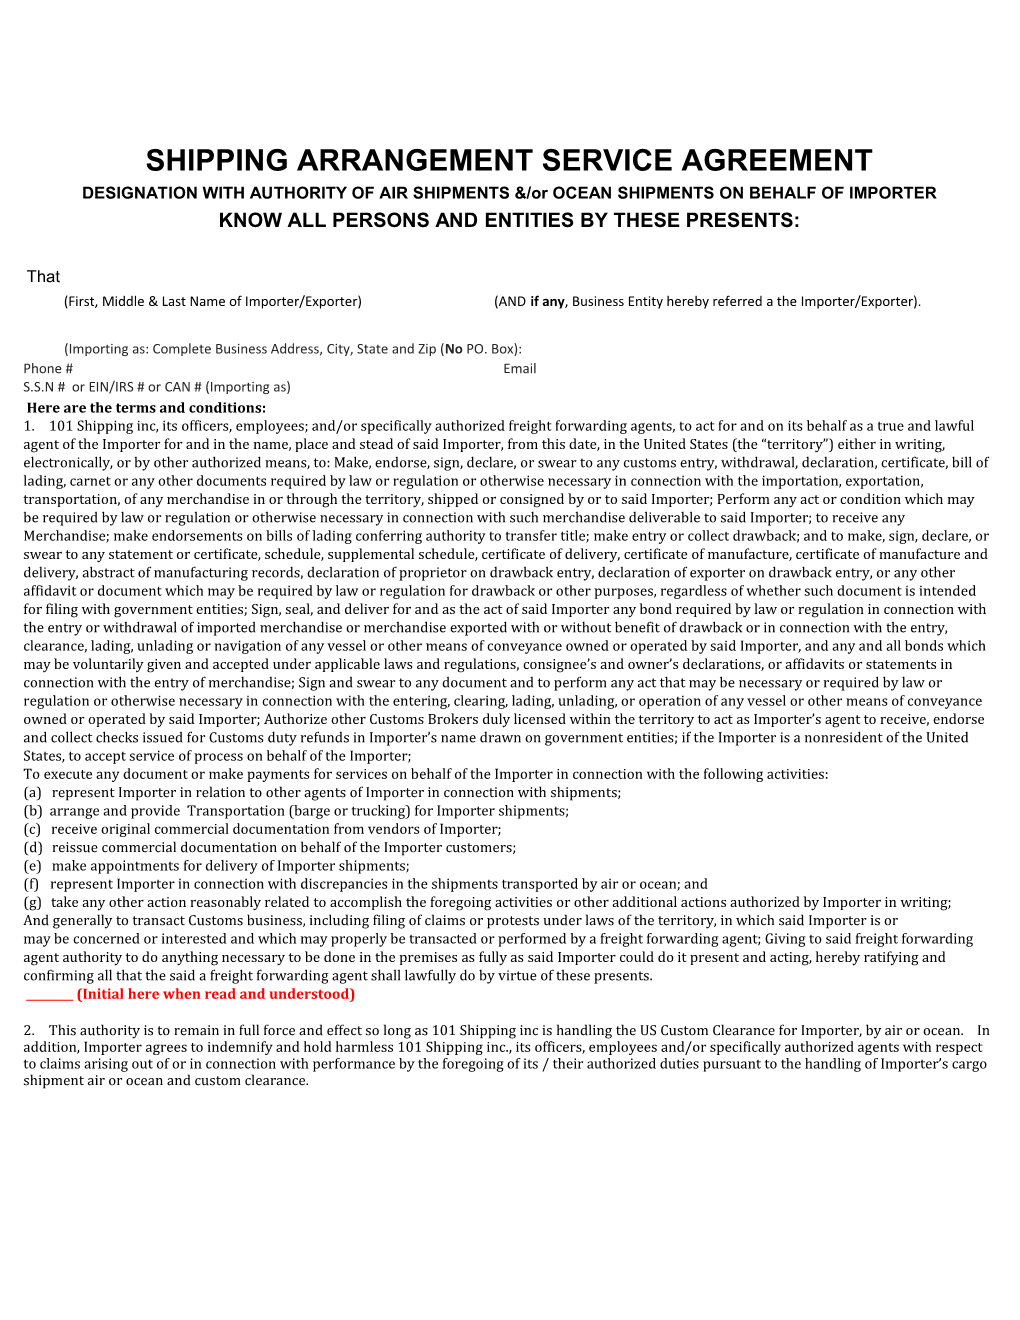 Shipping Arrangement Service Agreement